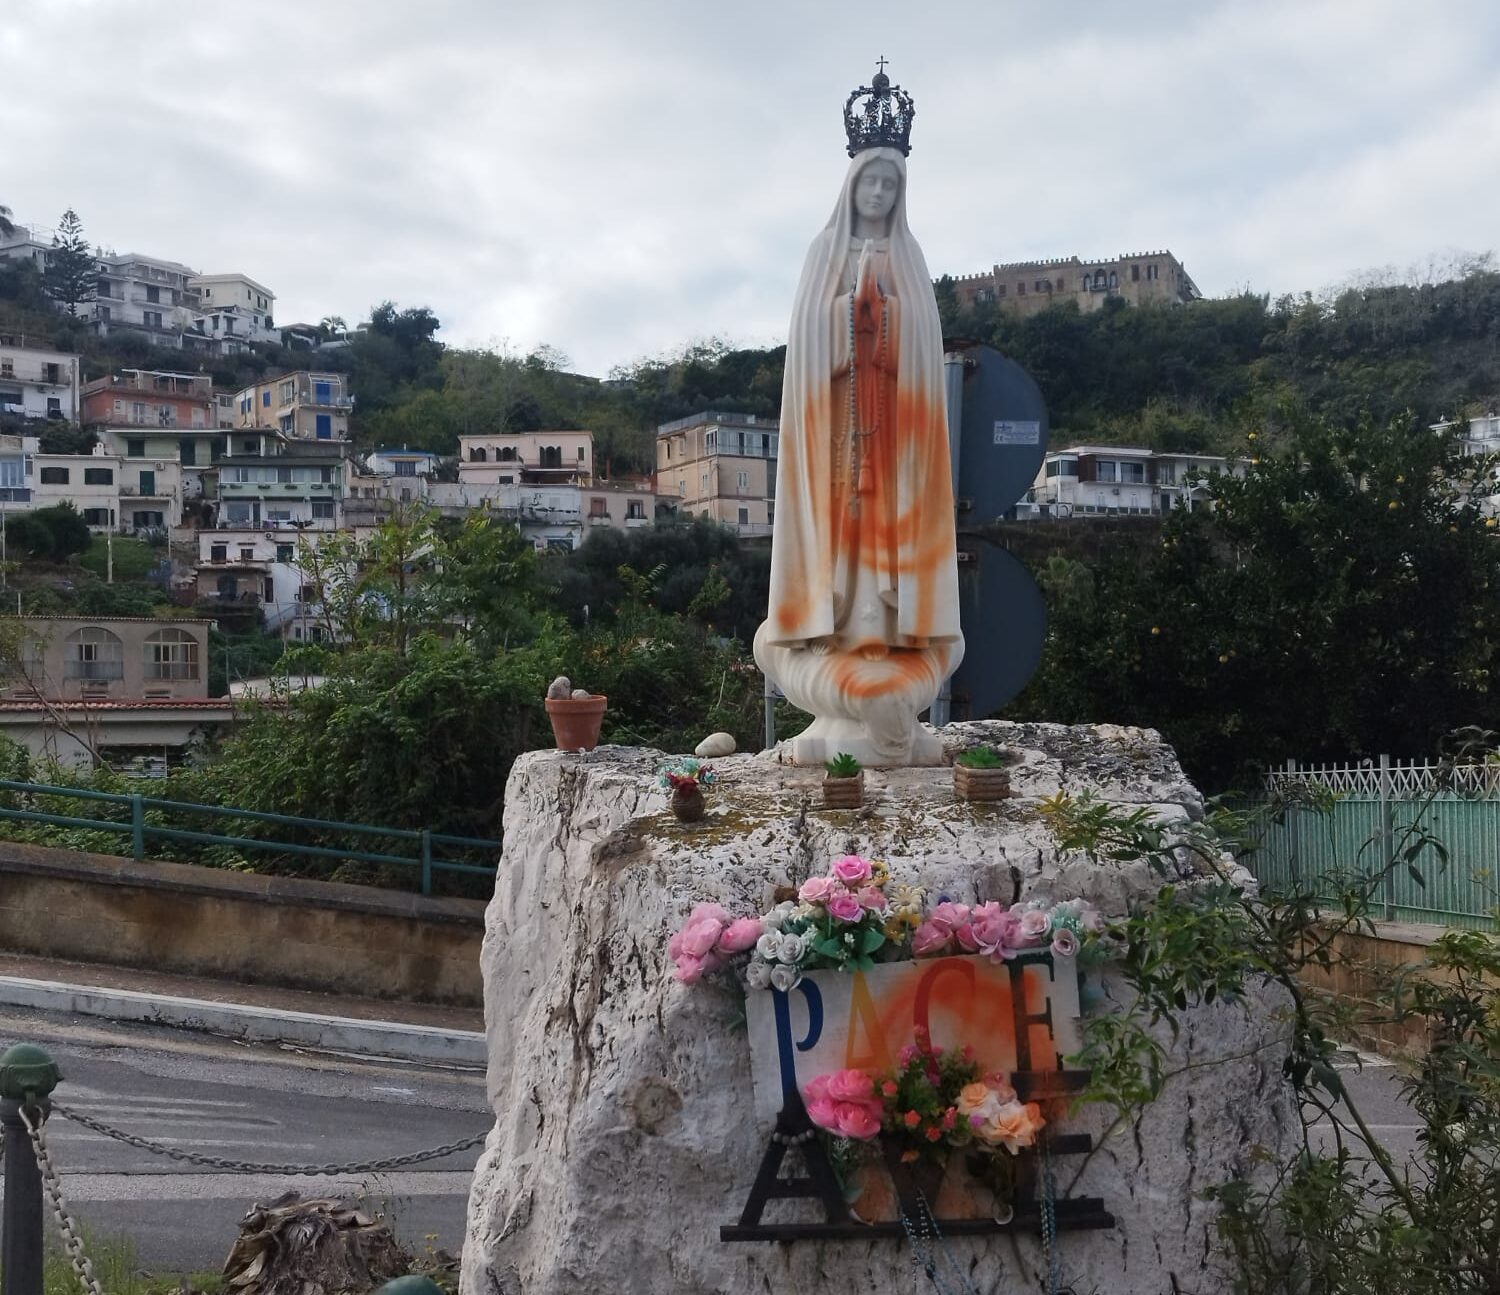 Simboli religiosi nel mirino dei vandali: vernice su statua della Madonna a Pozzuoli e chiesa a Bacoli – LE FOTO